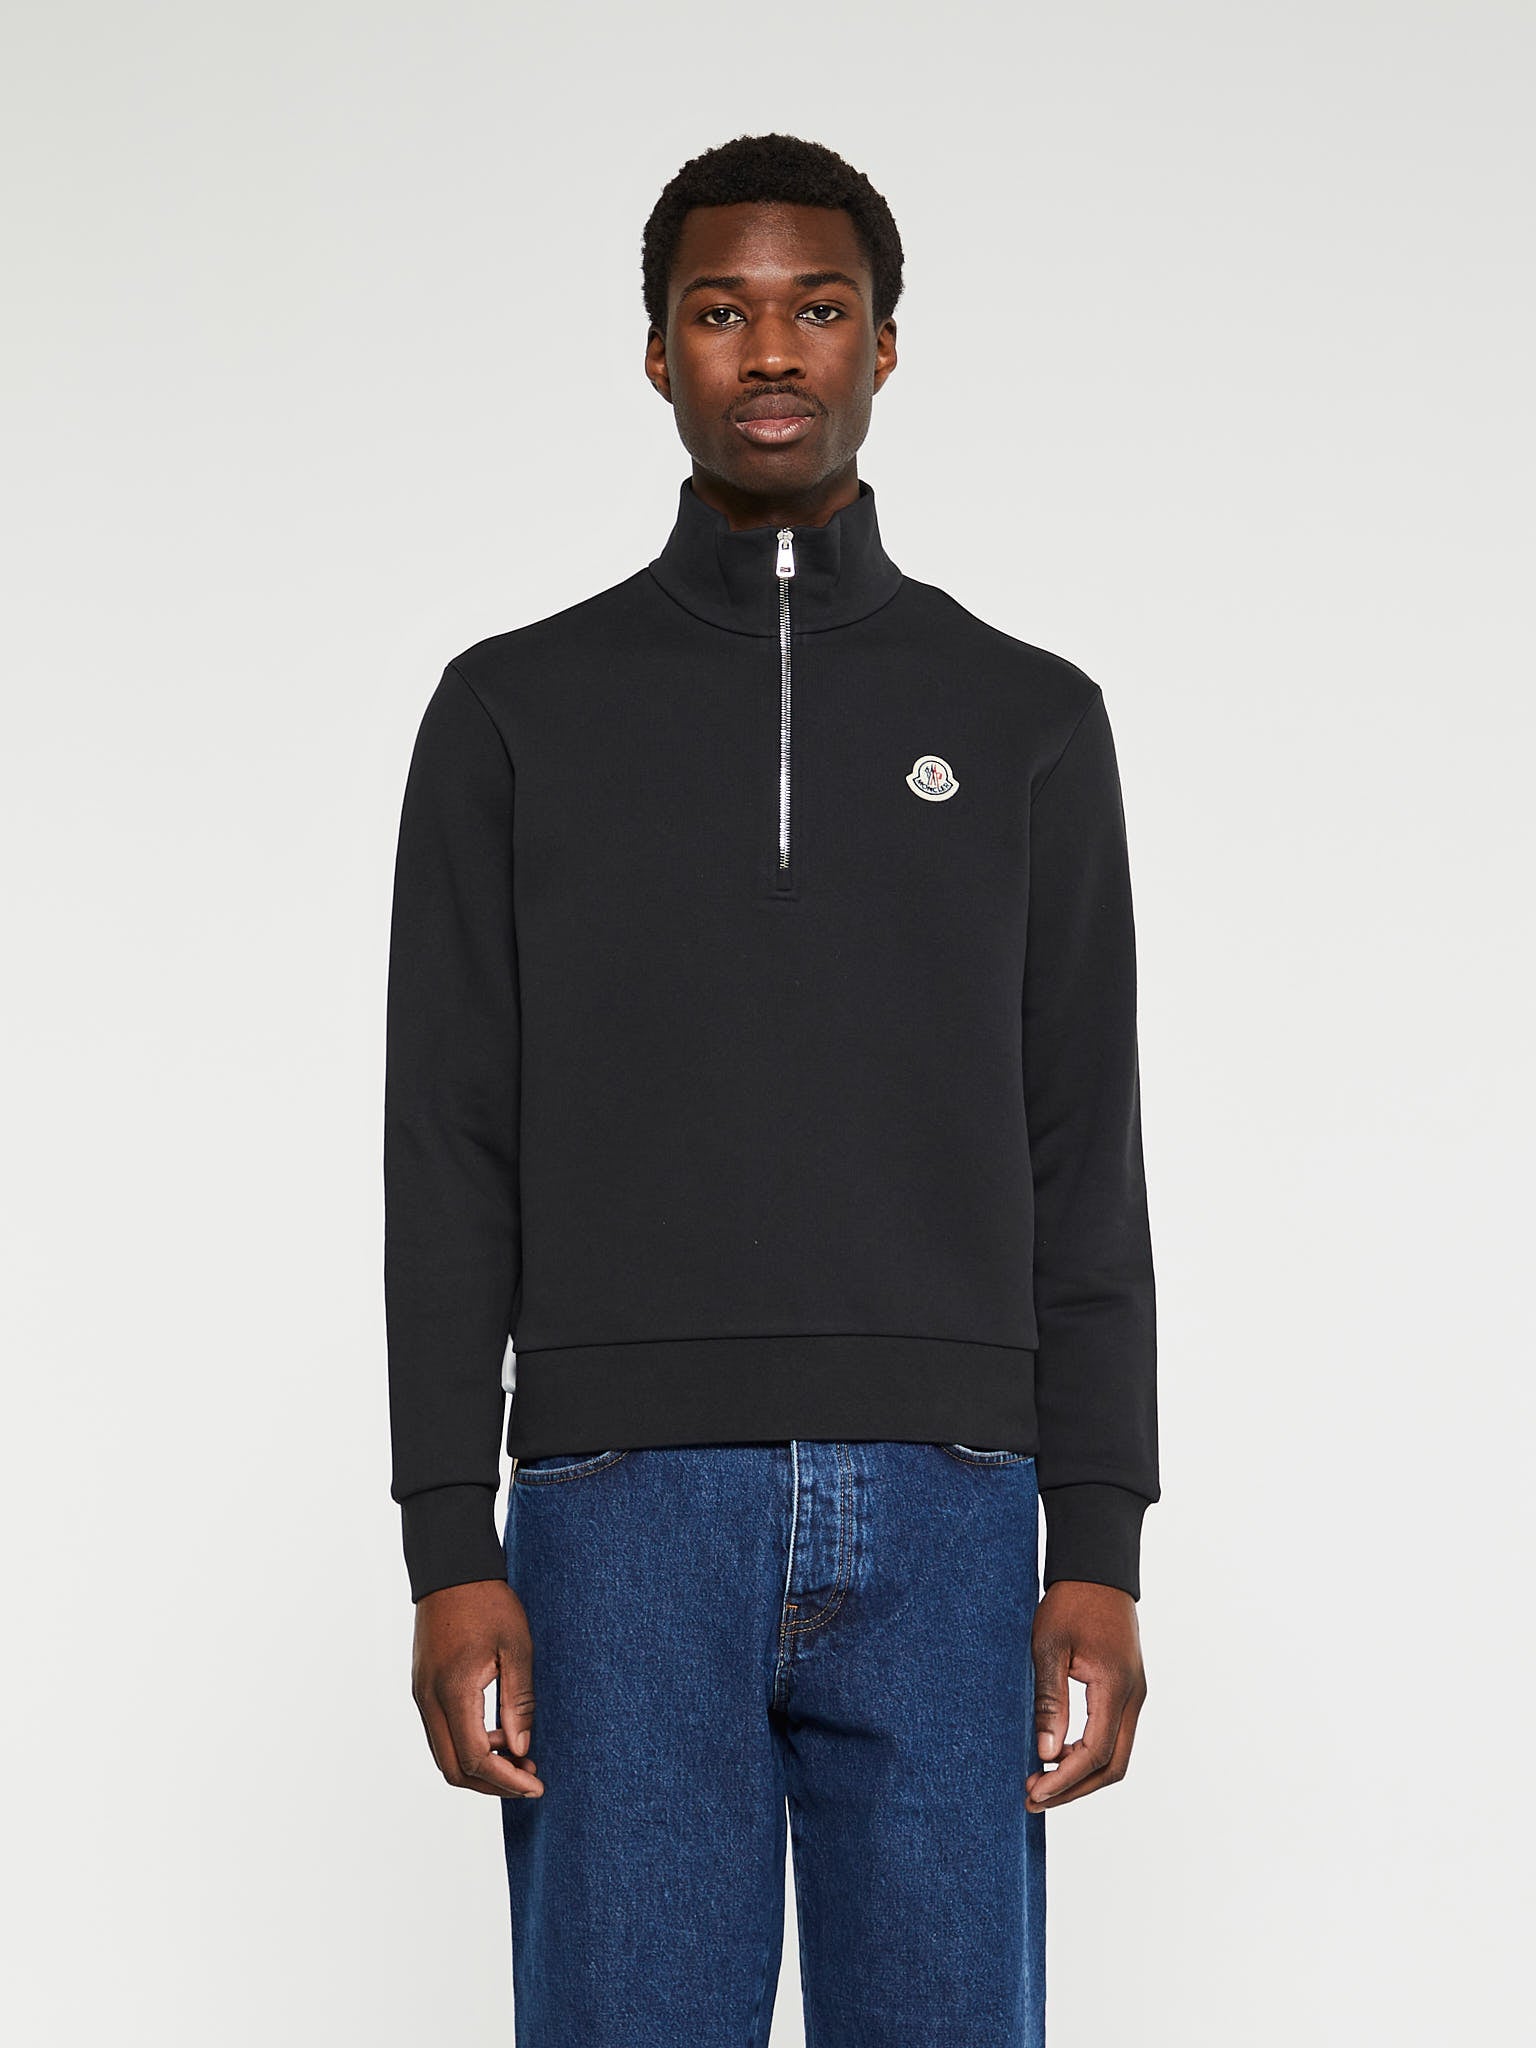 Zip-Up Sweatshirt in Black